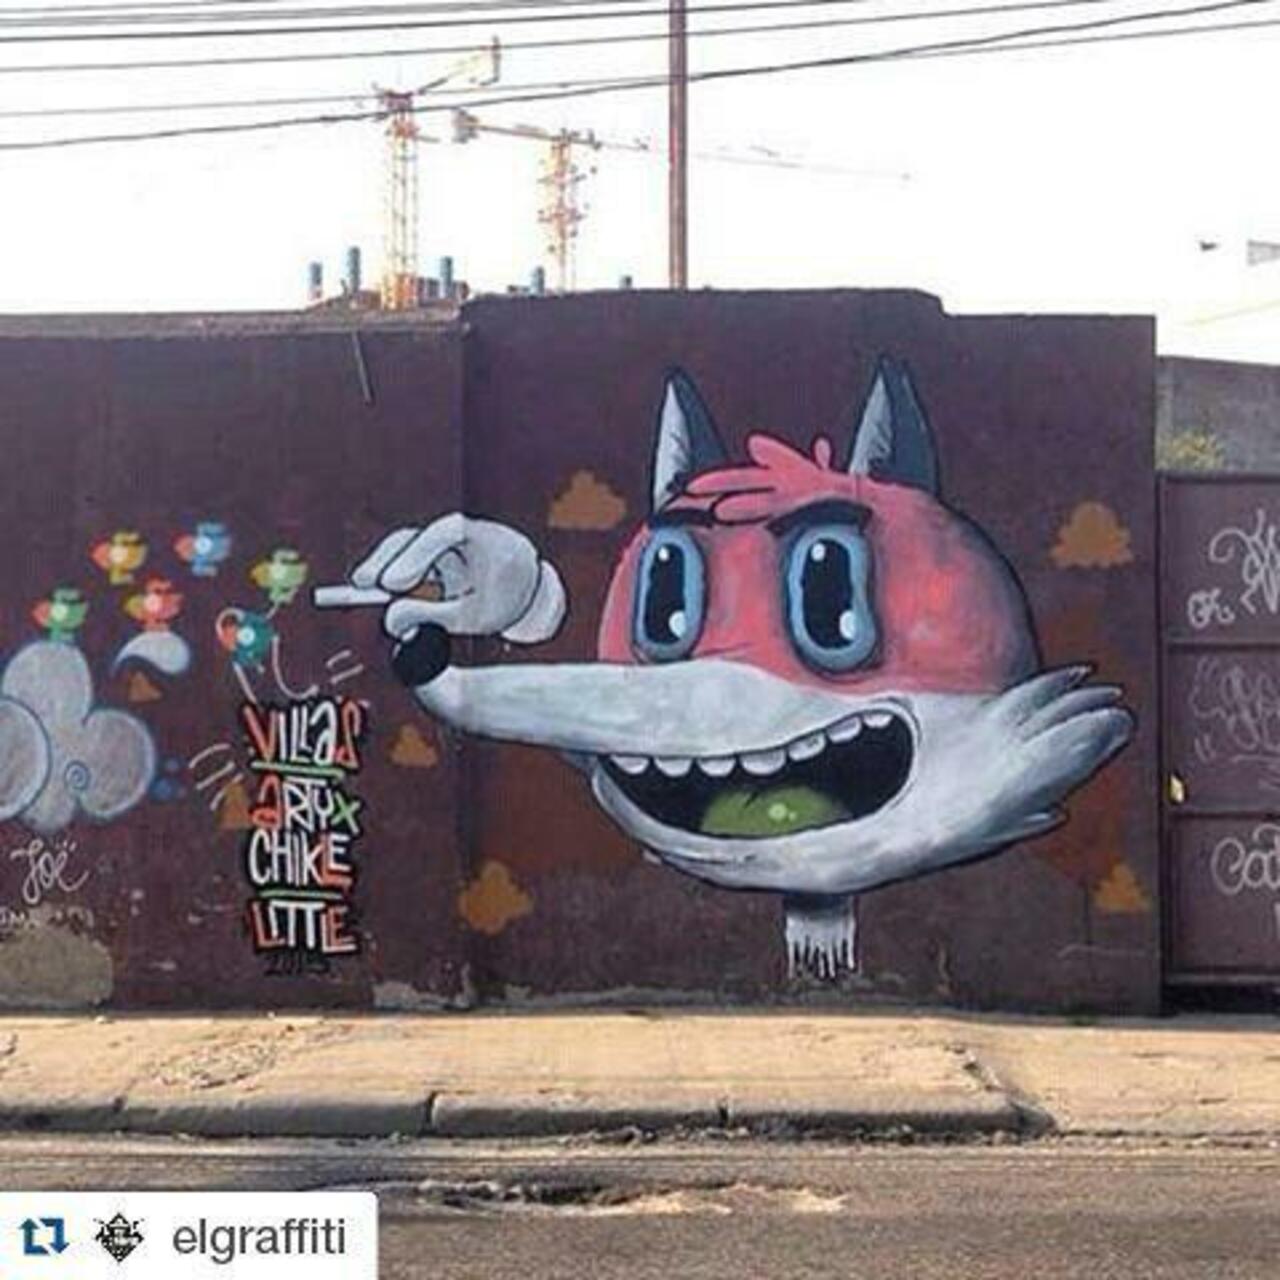 via #droidetv "http://bit.ly/1LqyvKr" #graffiti #streetart http://t.co/038eg2dmg0